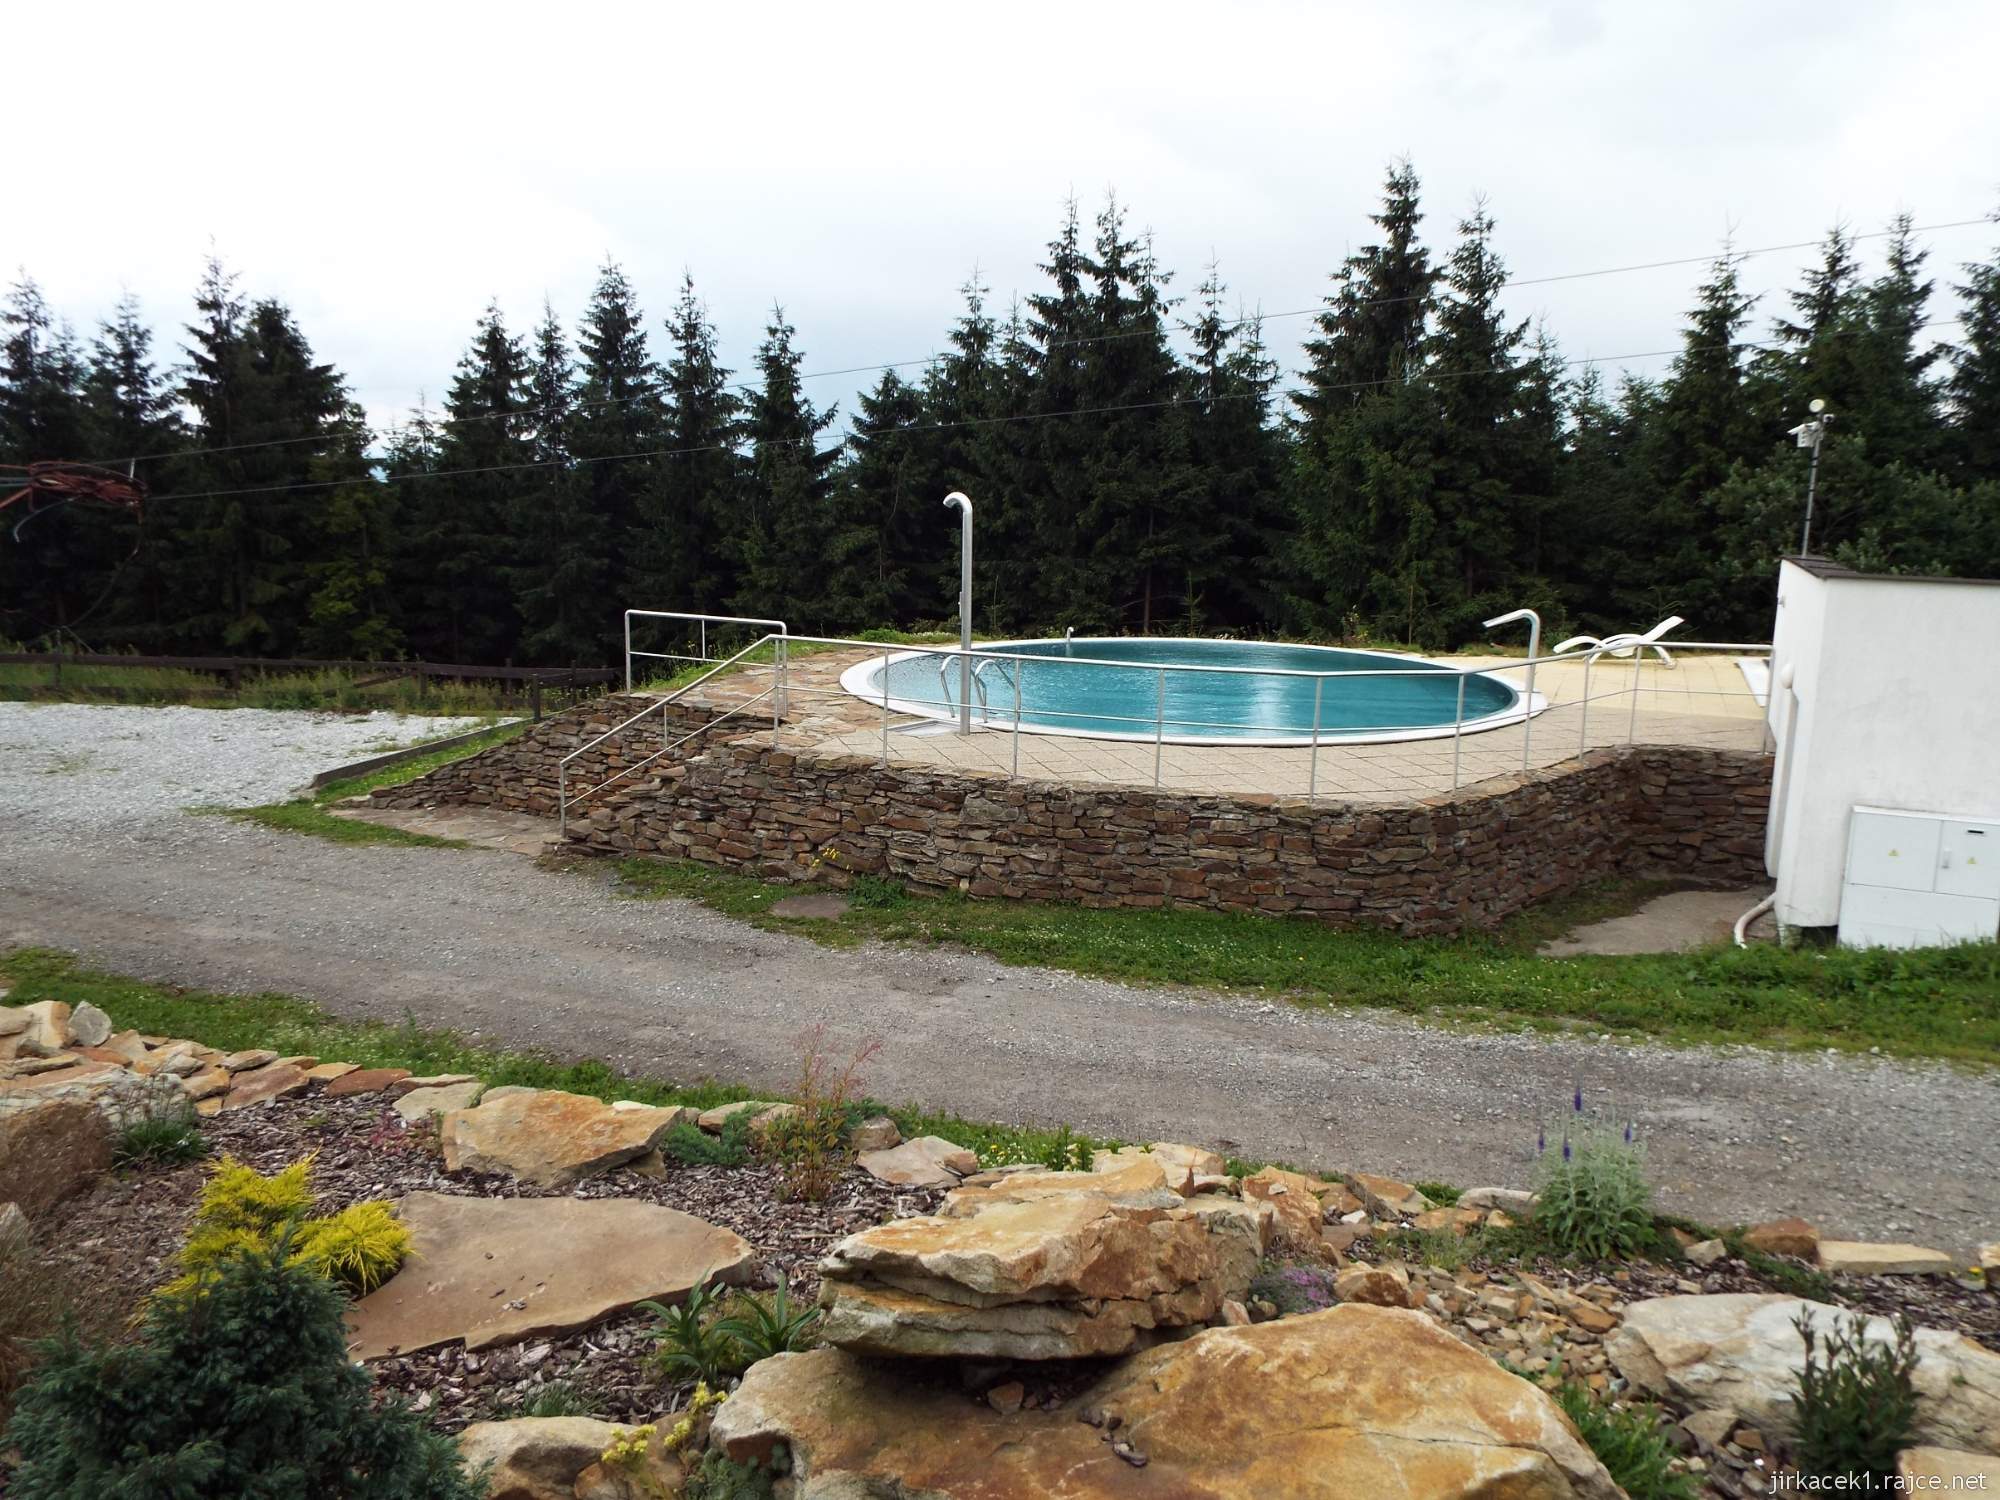 Horská chata Severka v Beskydech - chata Severka - nabídku bazénu jsme nevyužili